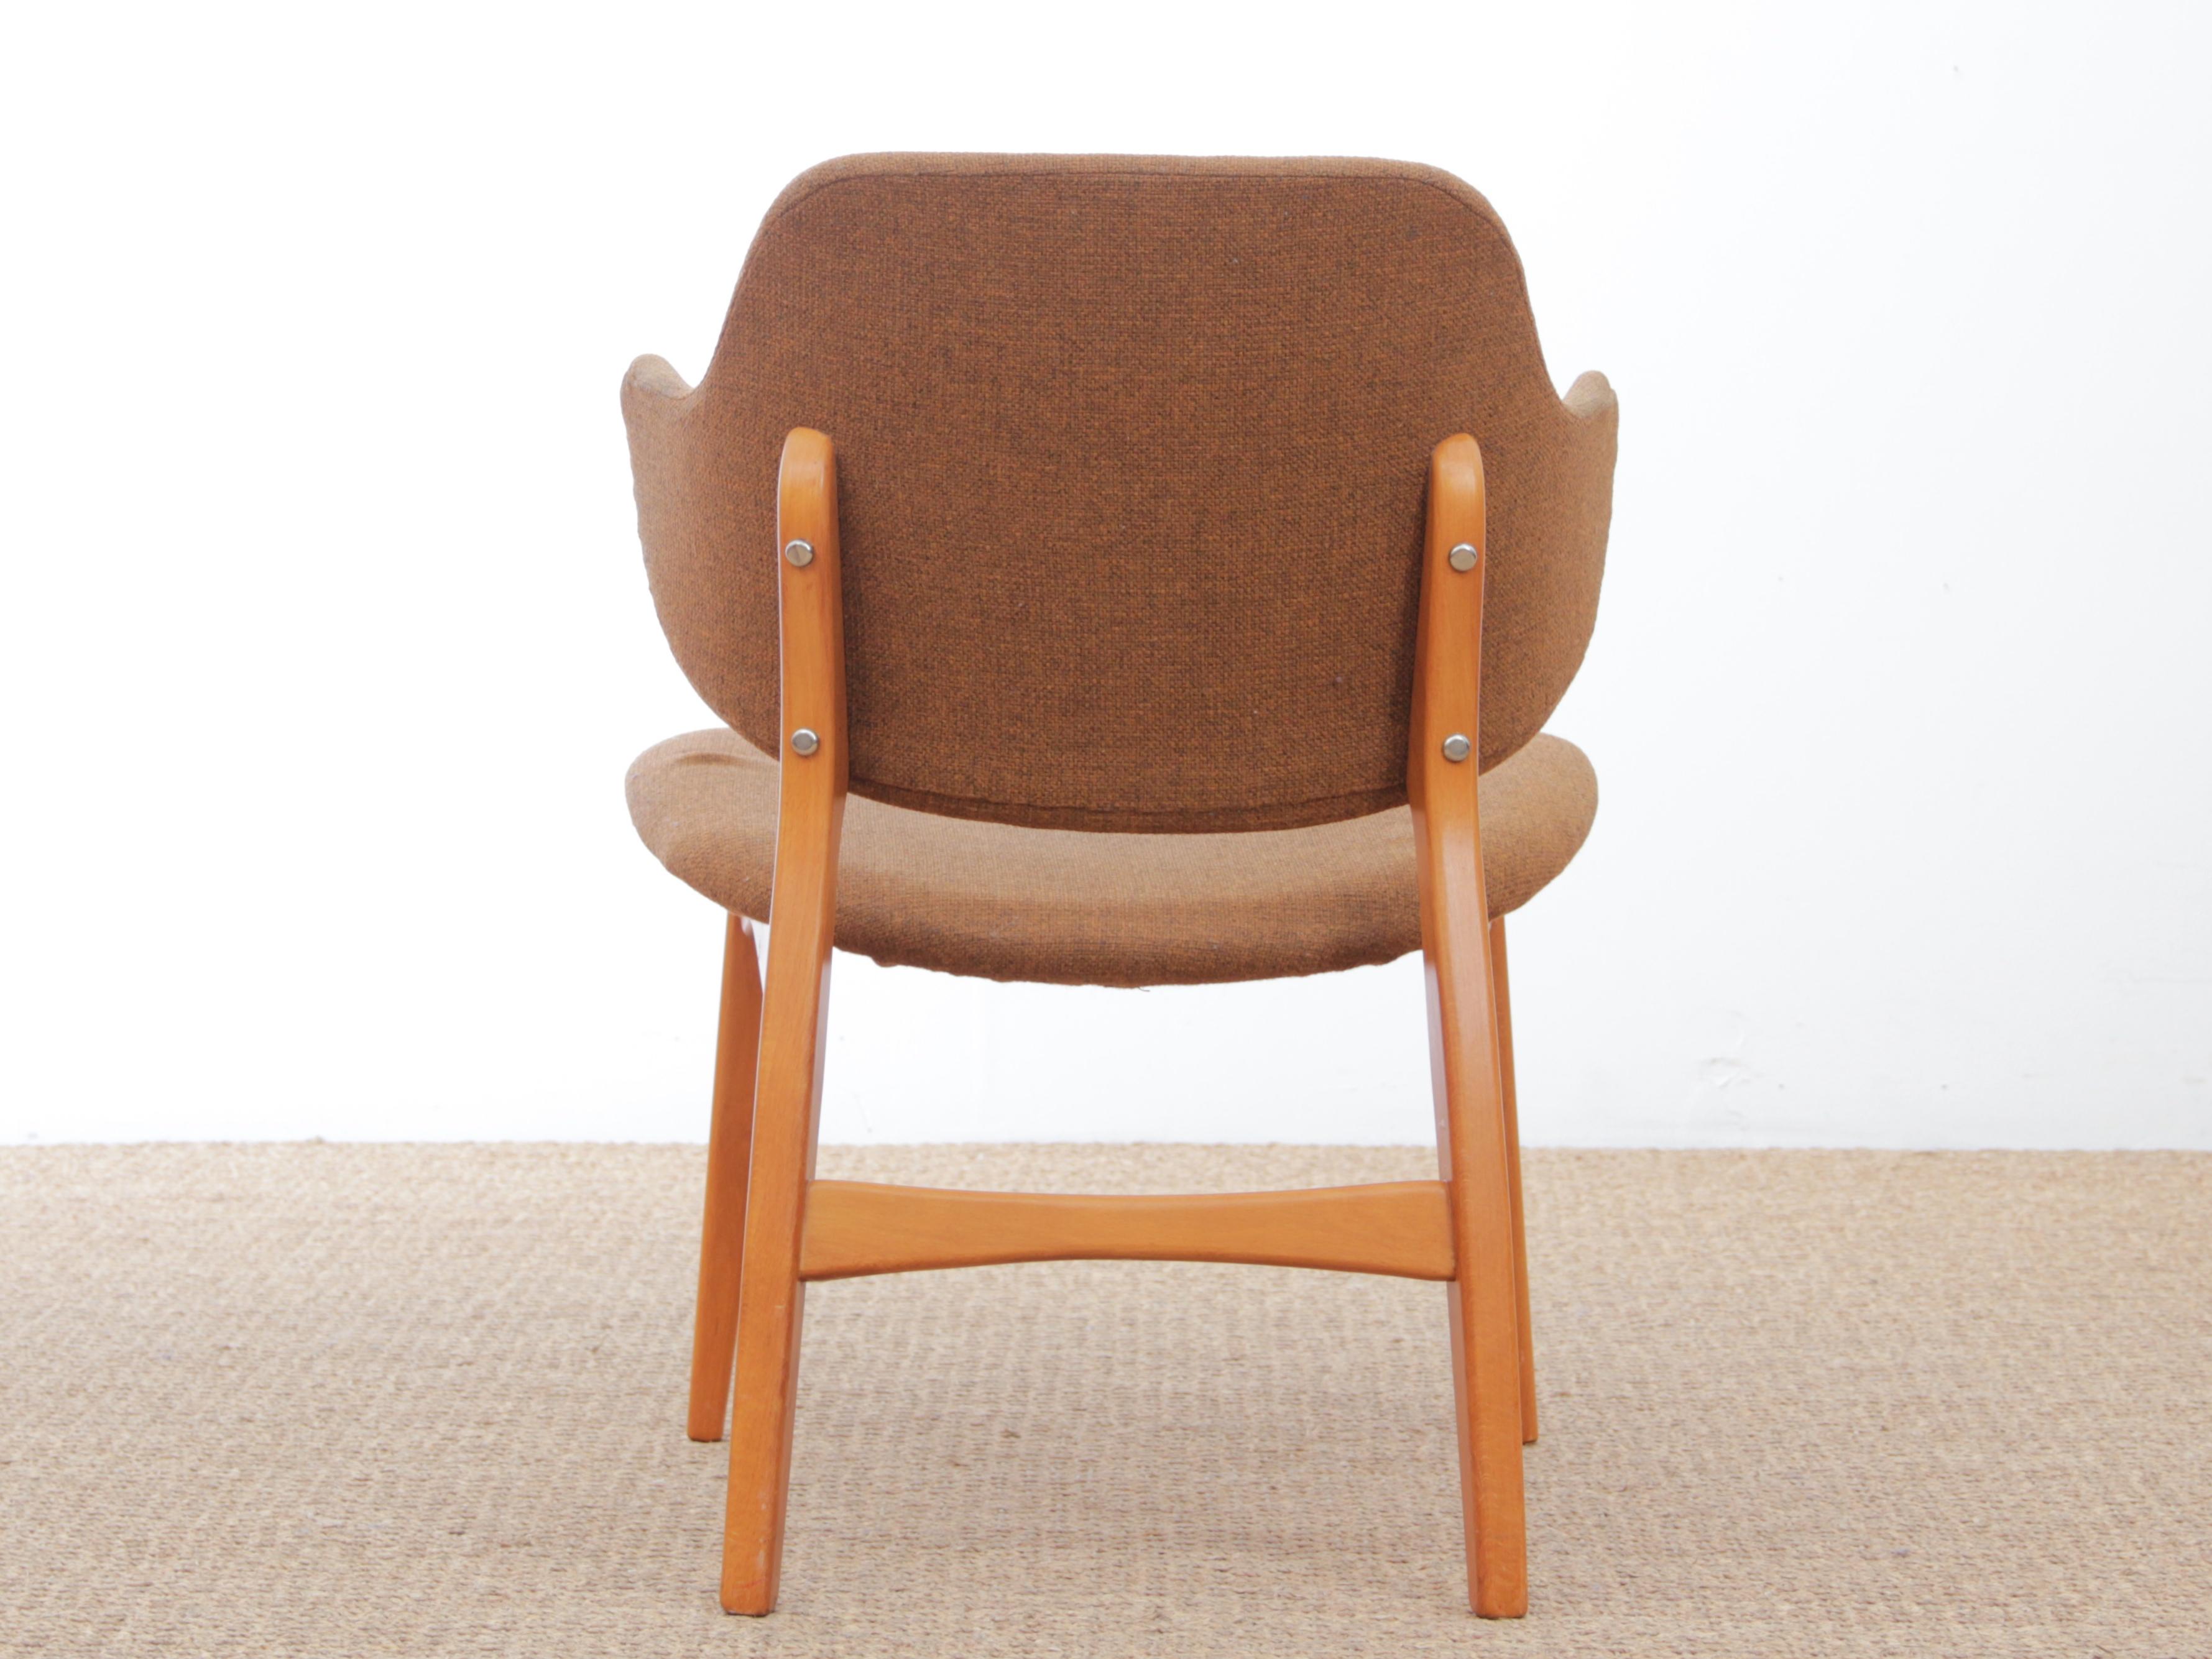 Scandinavian Modern Mid-Century Modern Scandinavian Lounge Chair Modèle Winnie for Ikea 1956